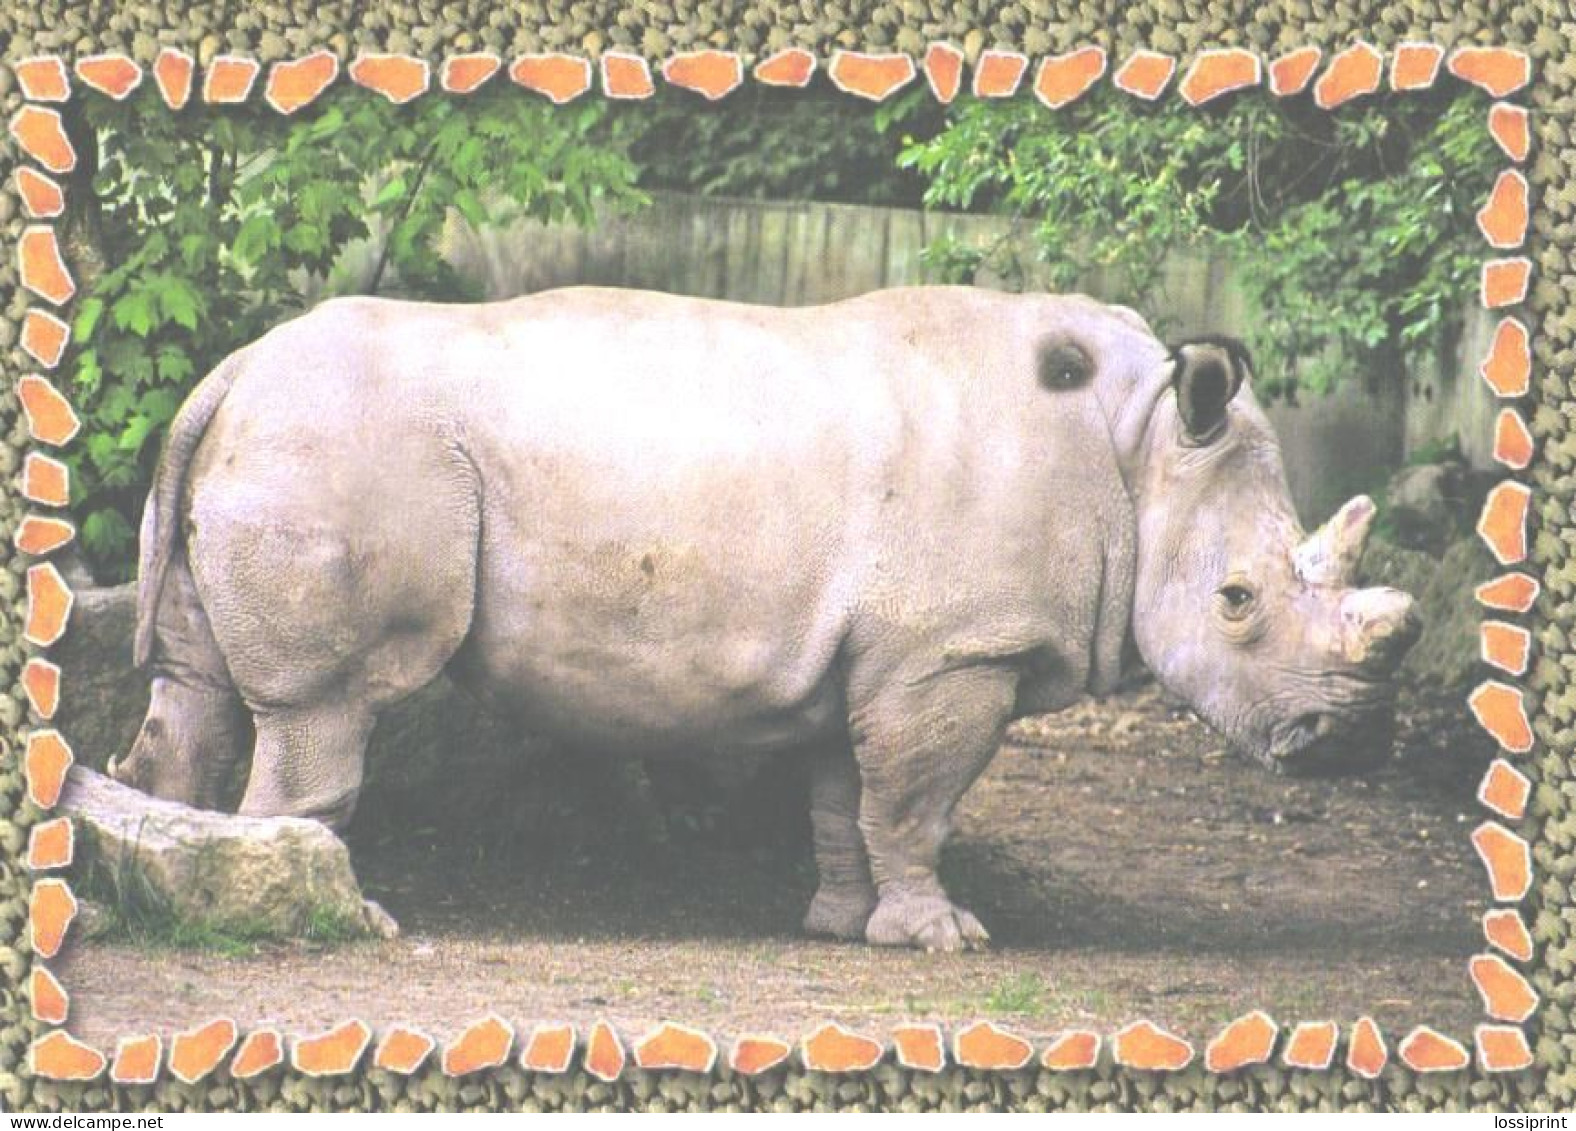 Rhinoceros In Zoo - Neushoorn